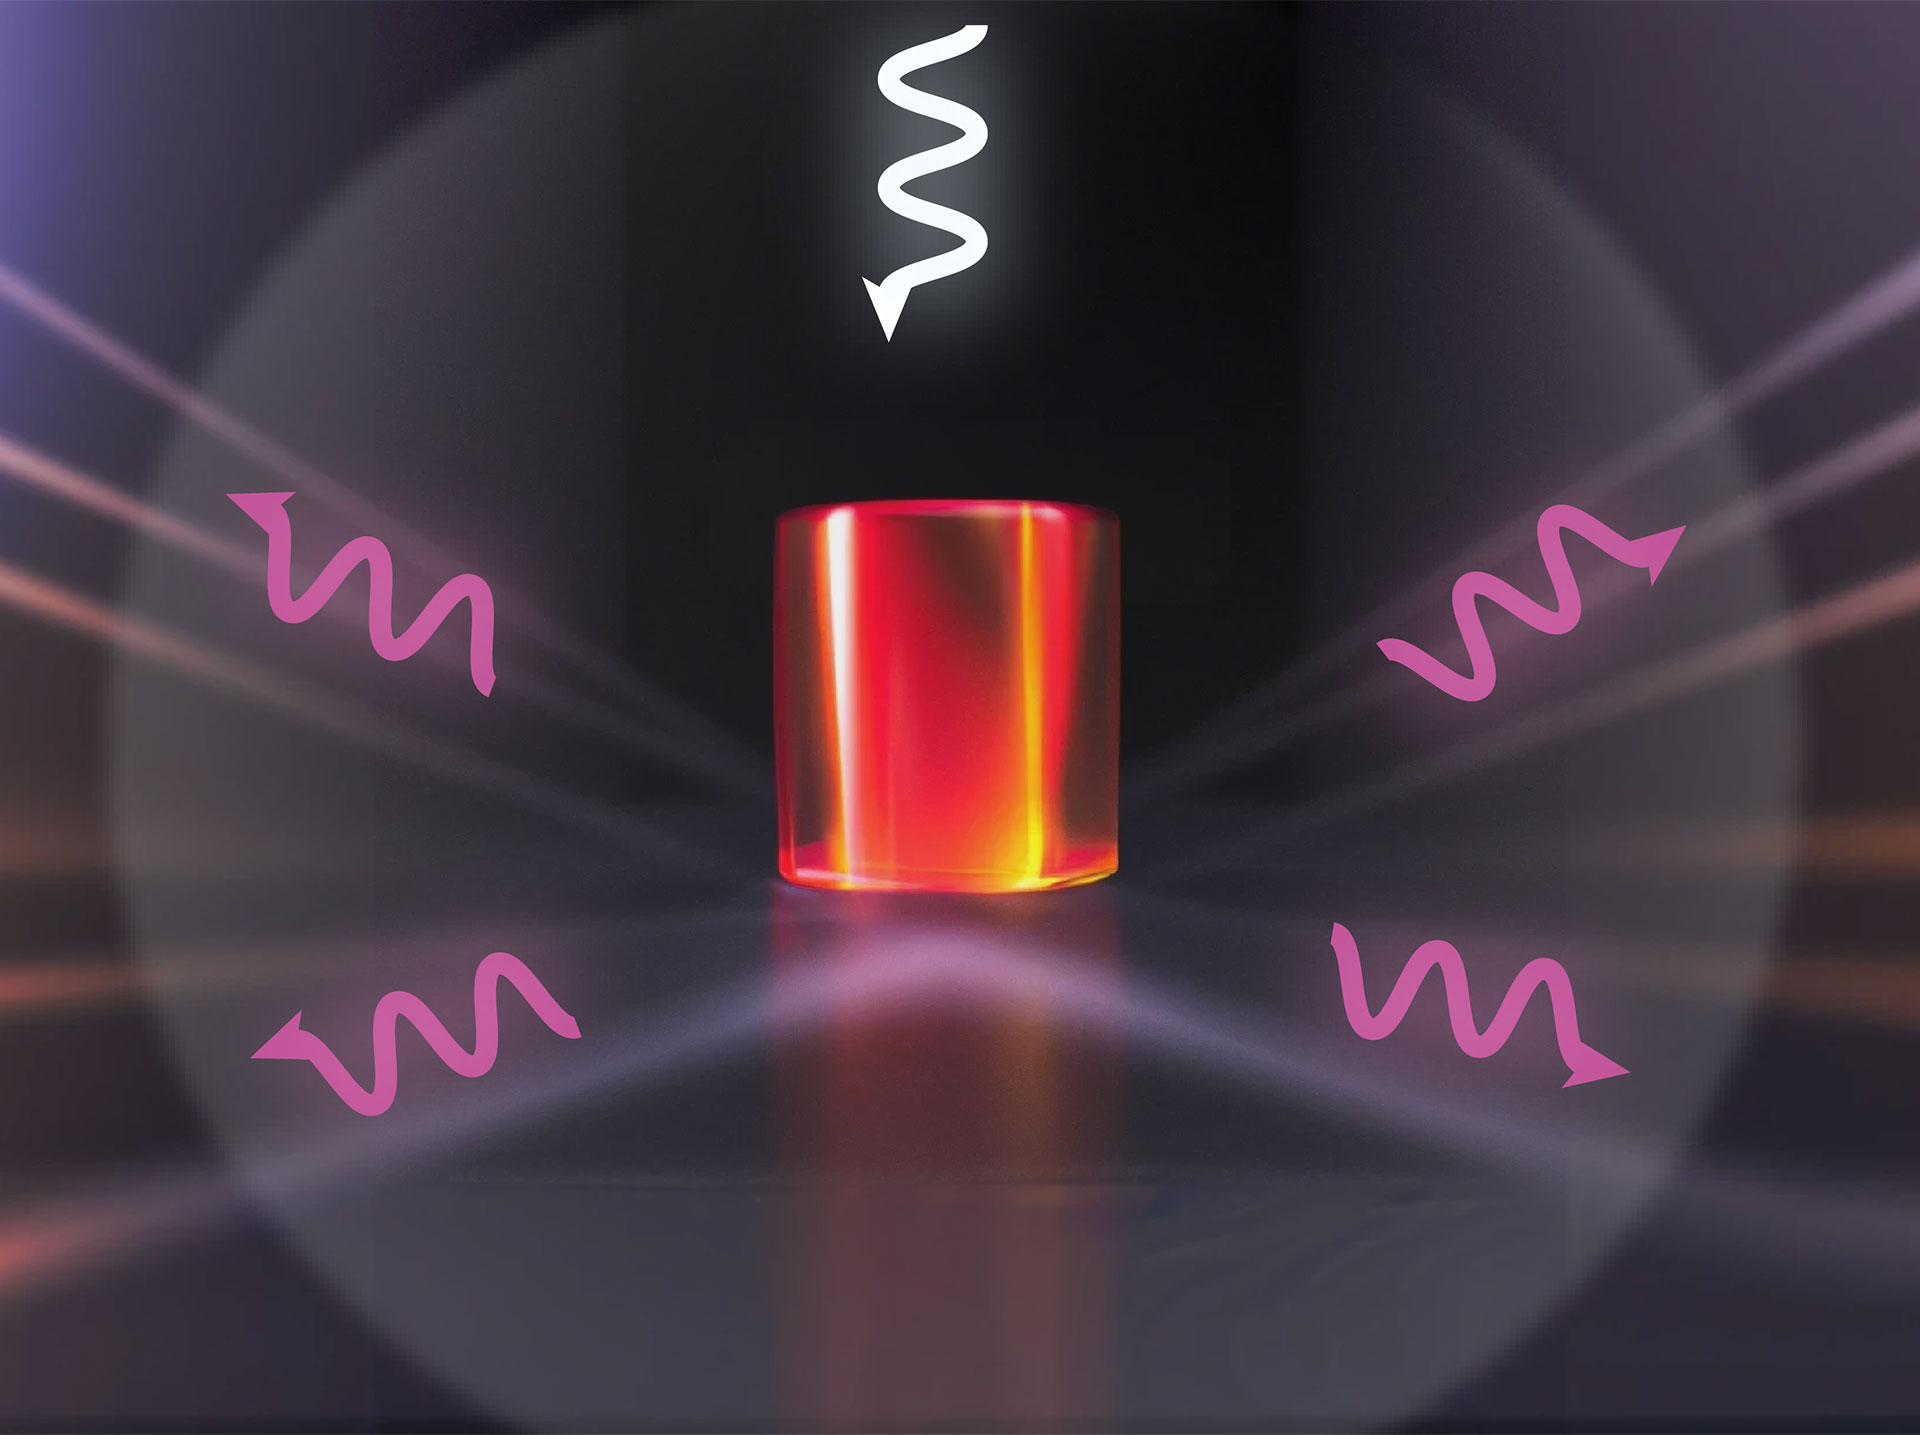 Ein Silizium-Nanopartikel (roter Zylinder) wird mit Laserlicht beleuchtet (lila Pfeil). Infolge der Superstreuung lenkt das Nanopartikel einen großen Teil des einfallenden Laserlichts in mehrere Richtungen um (weiße Pfeile). ©Adrià Canós Valero